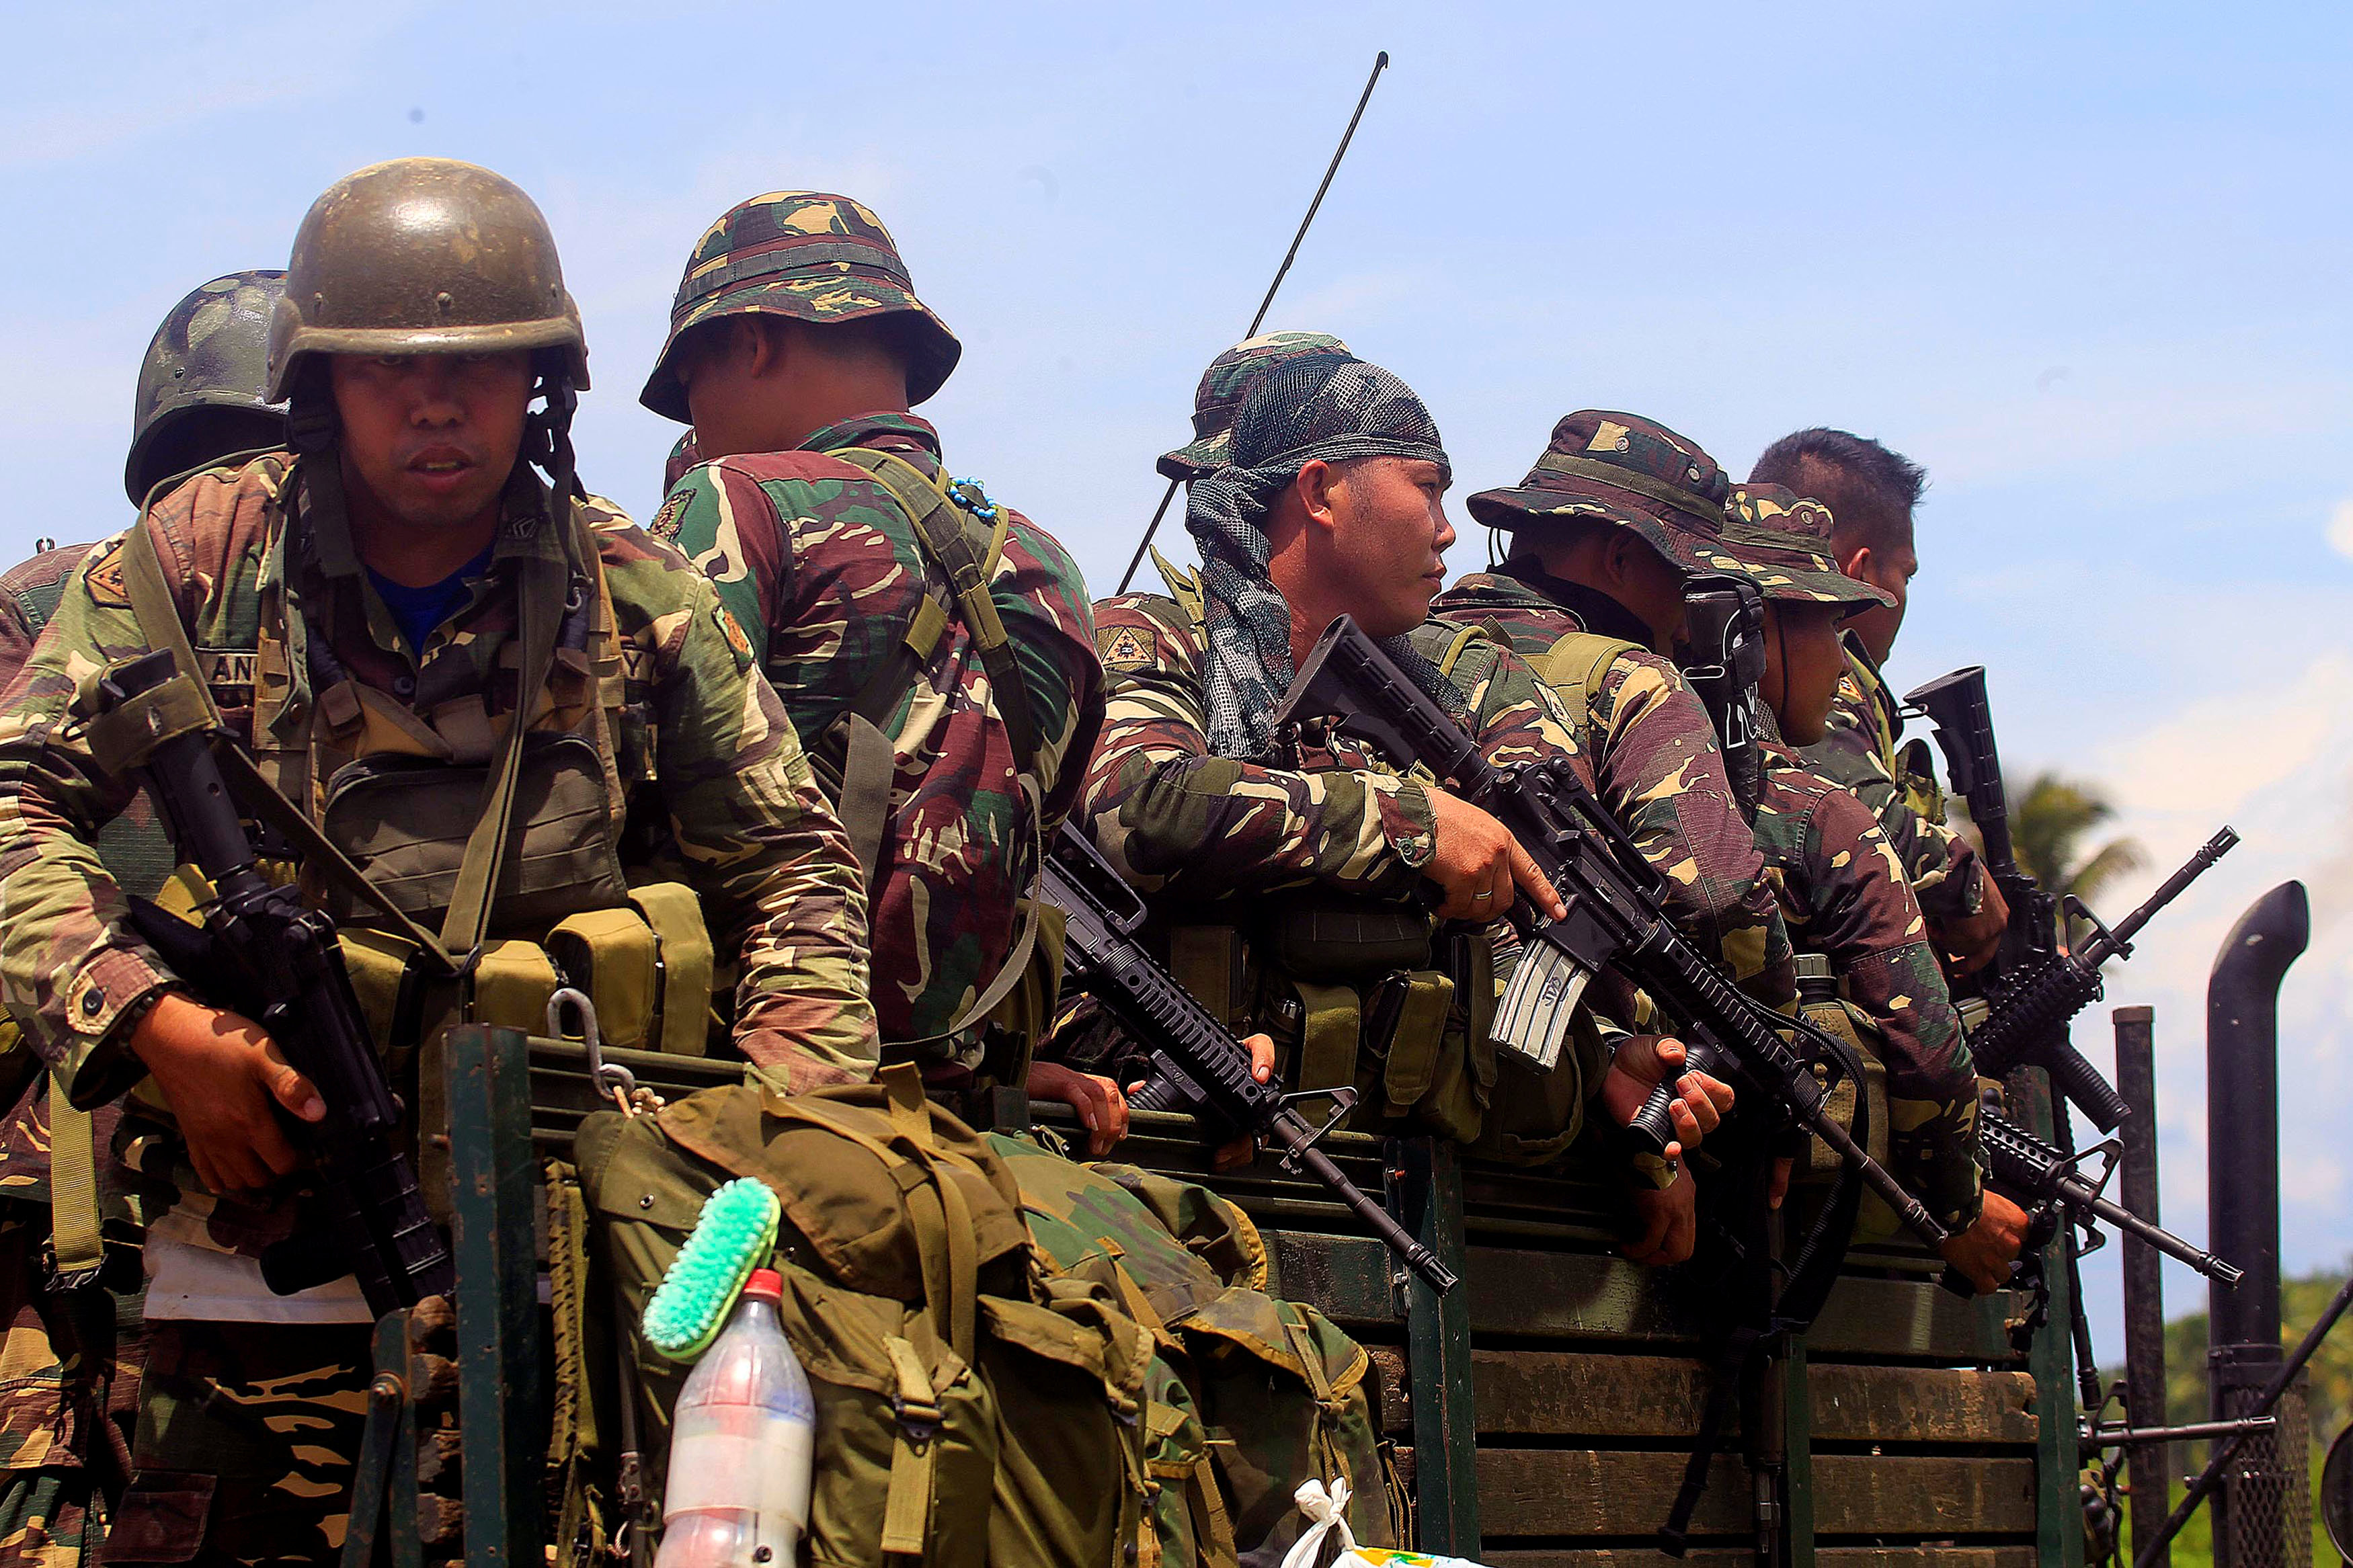 الجيش الفلبينى